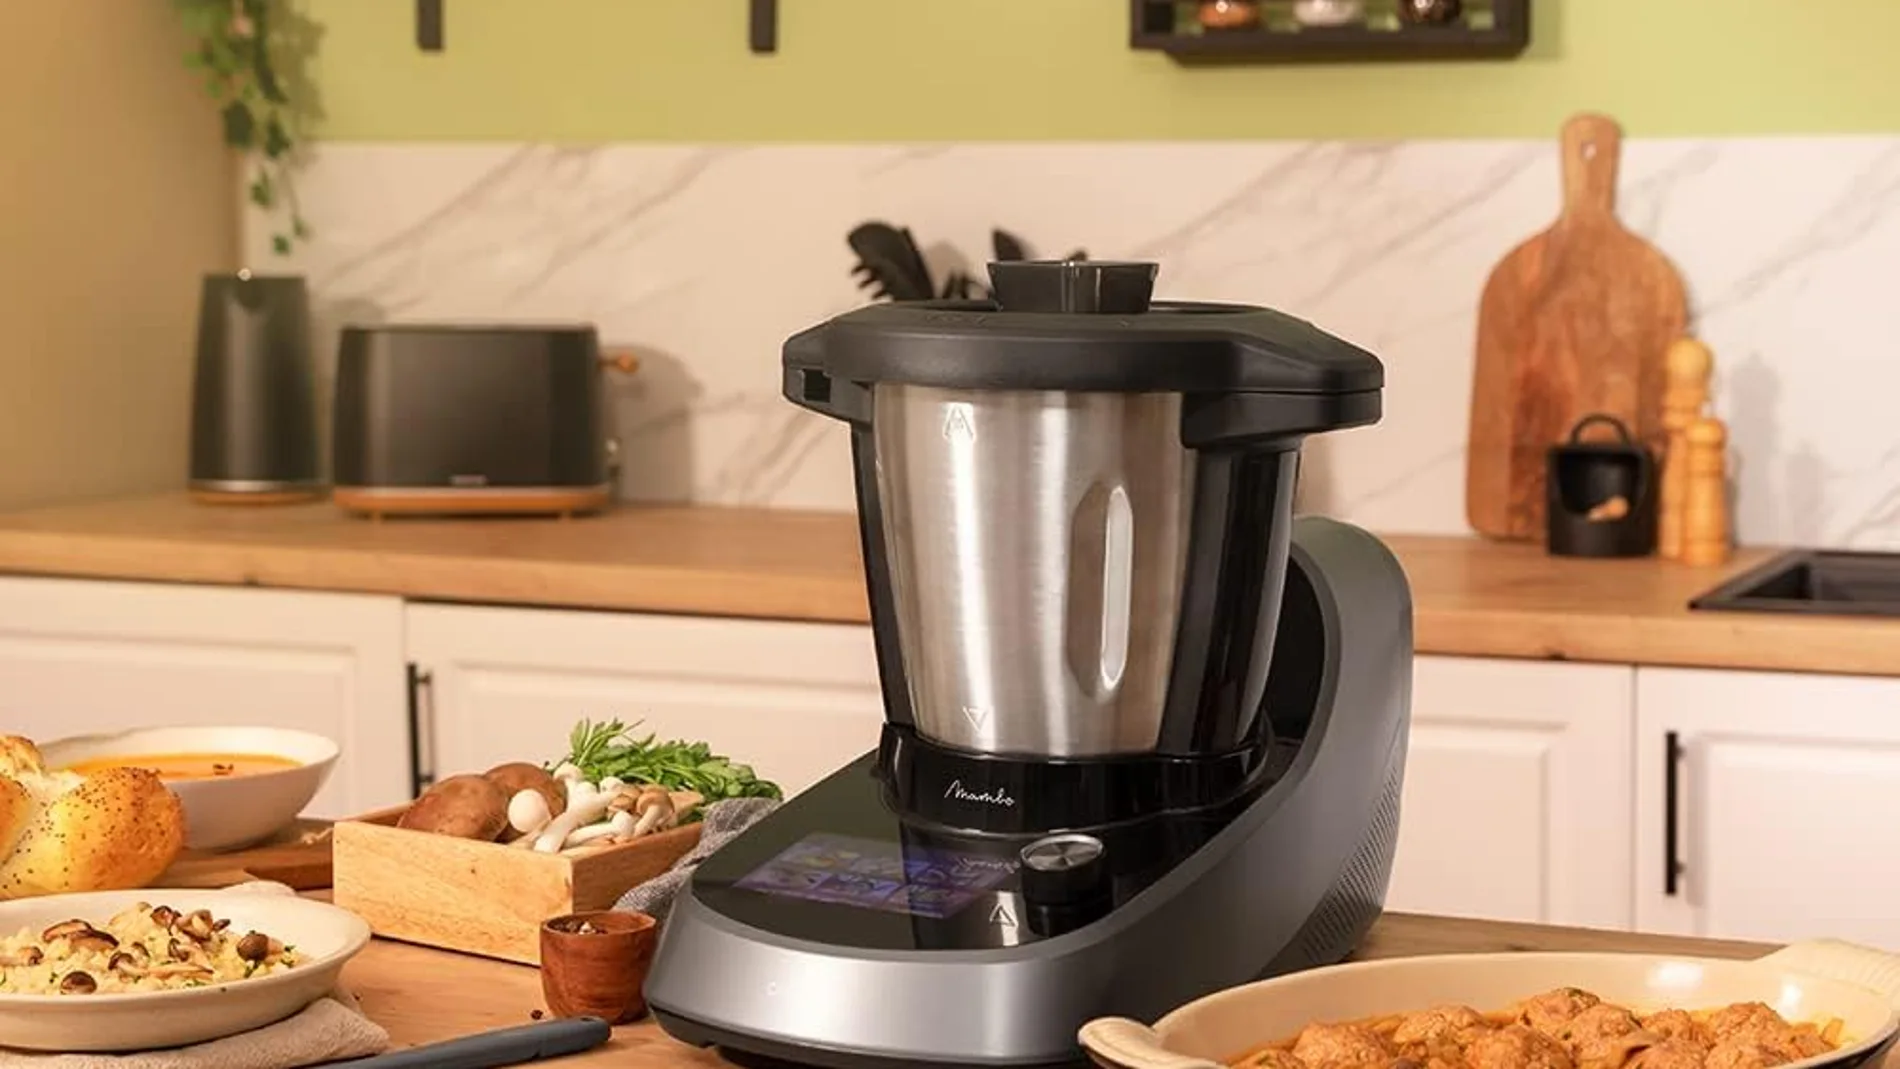 Estos son los aparatos de cocina más fiables, según la OCU